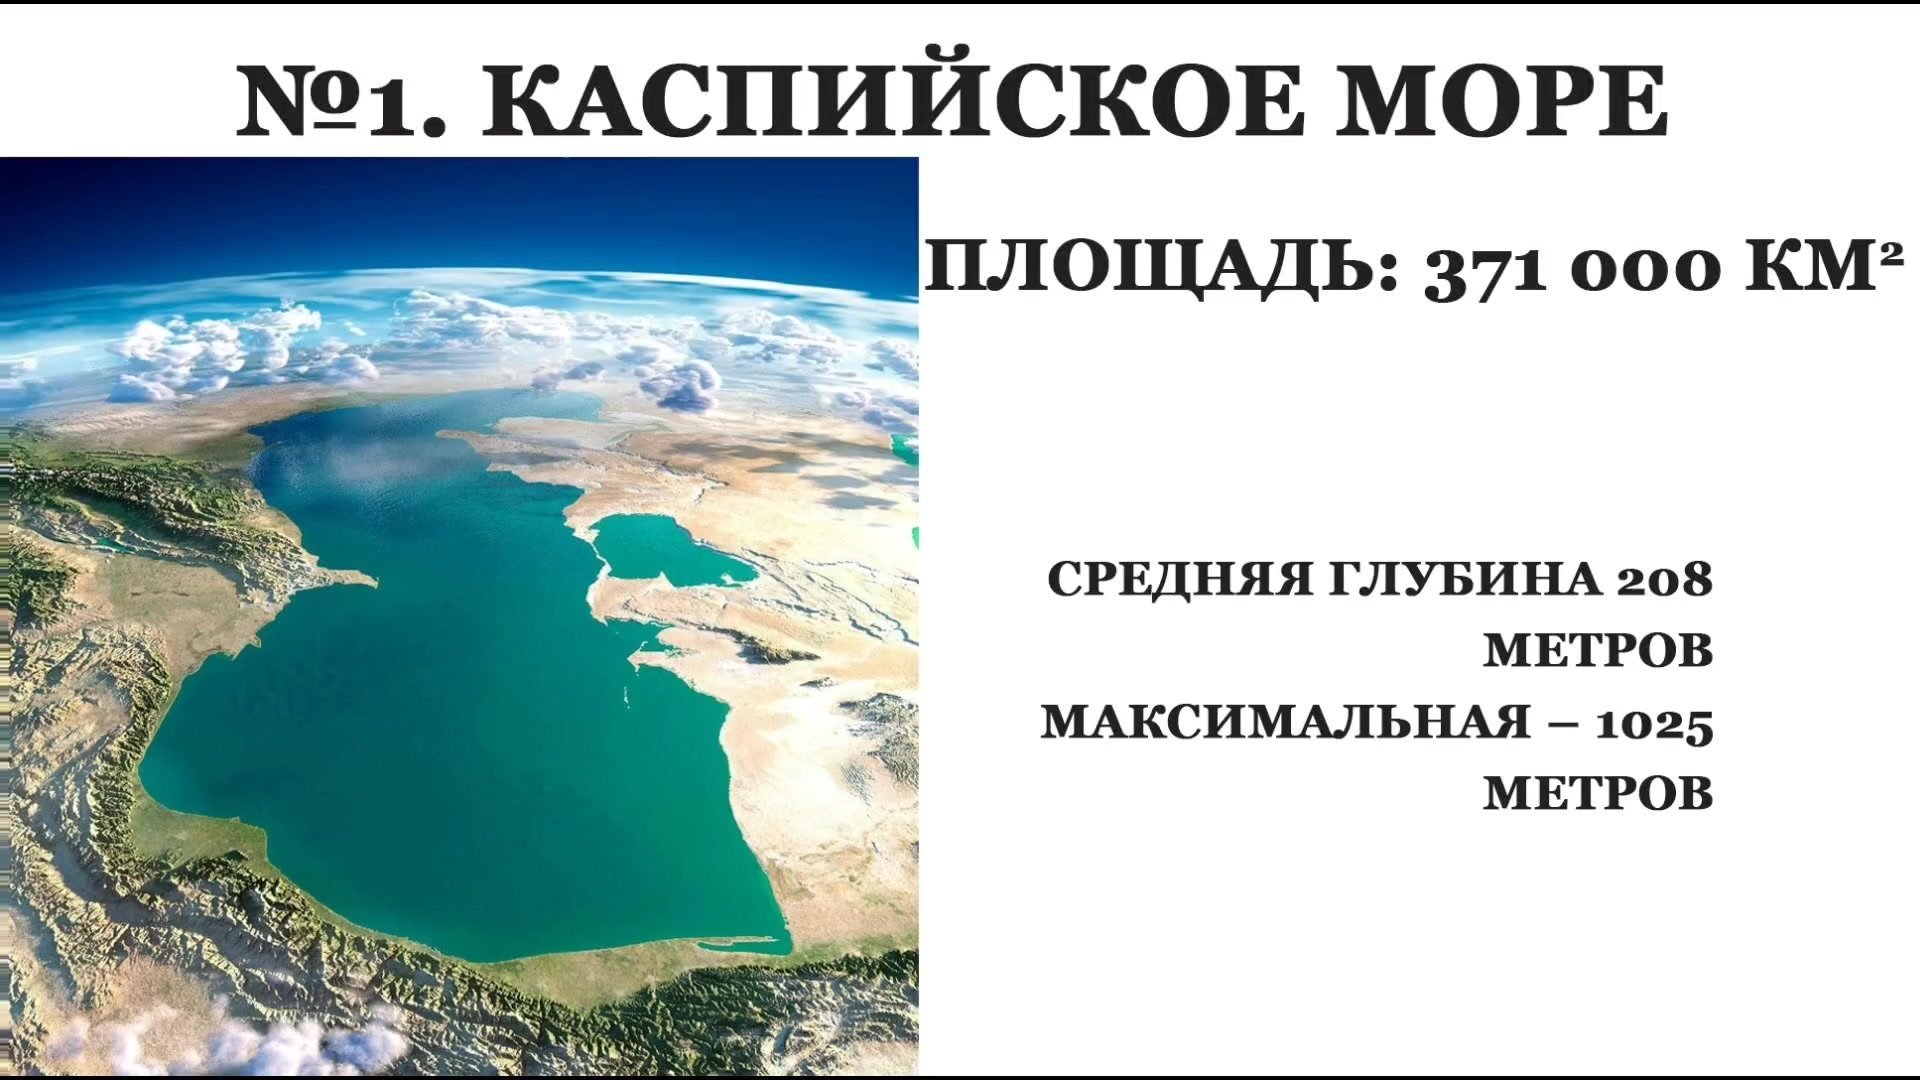 Самое большое озеро. Самое большое озеро в России. Самое большое озеро в мире. Самые Юольши еозёра. Крупные озера бразилии 7